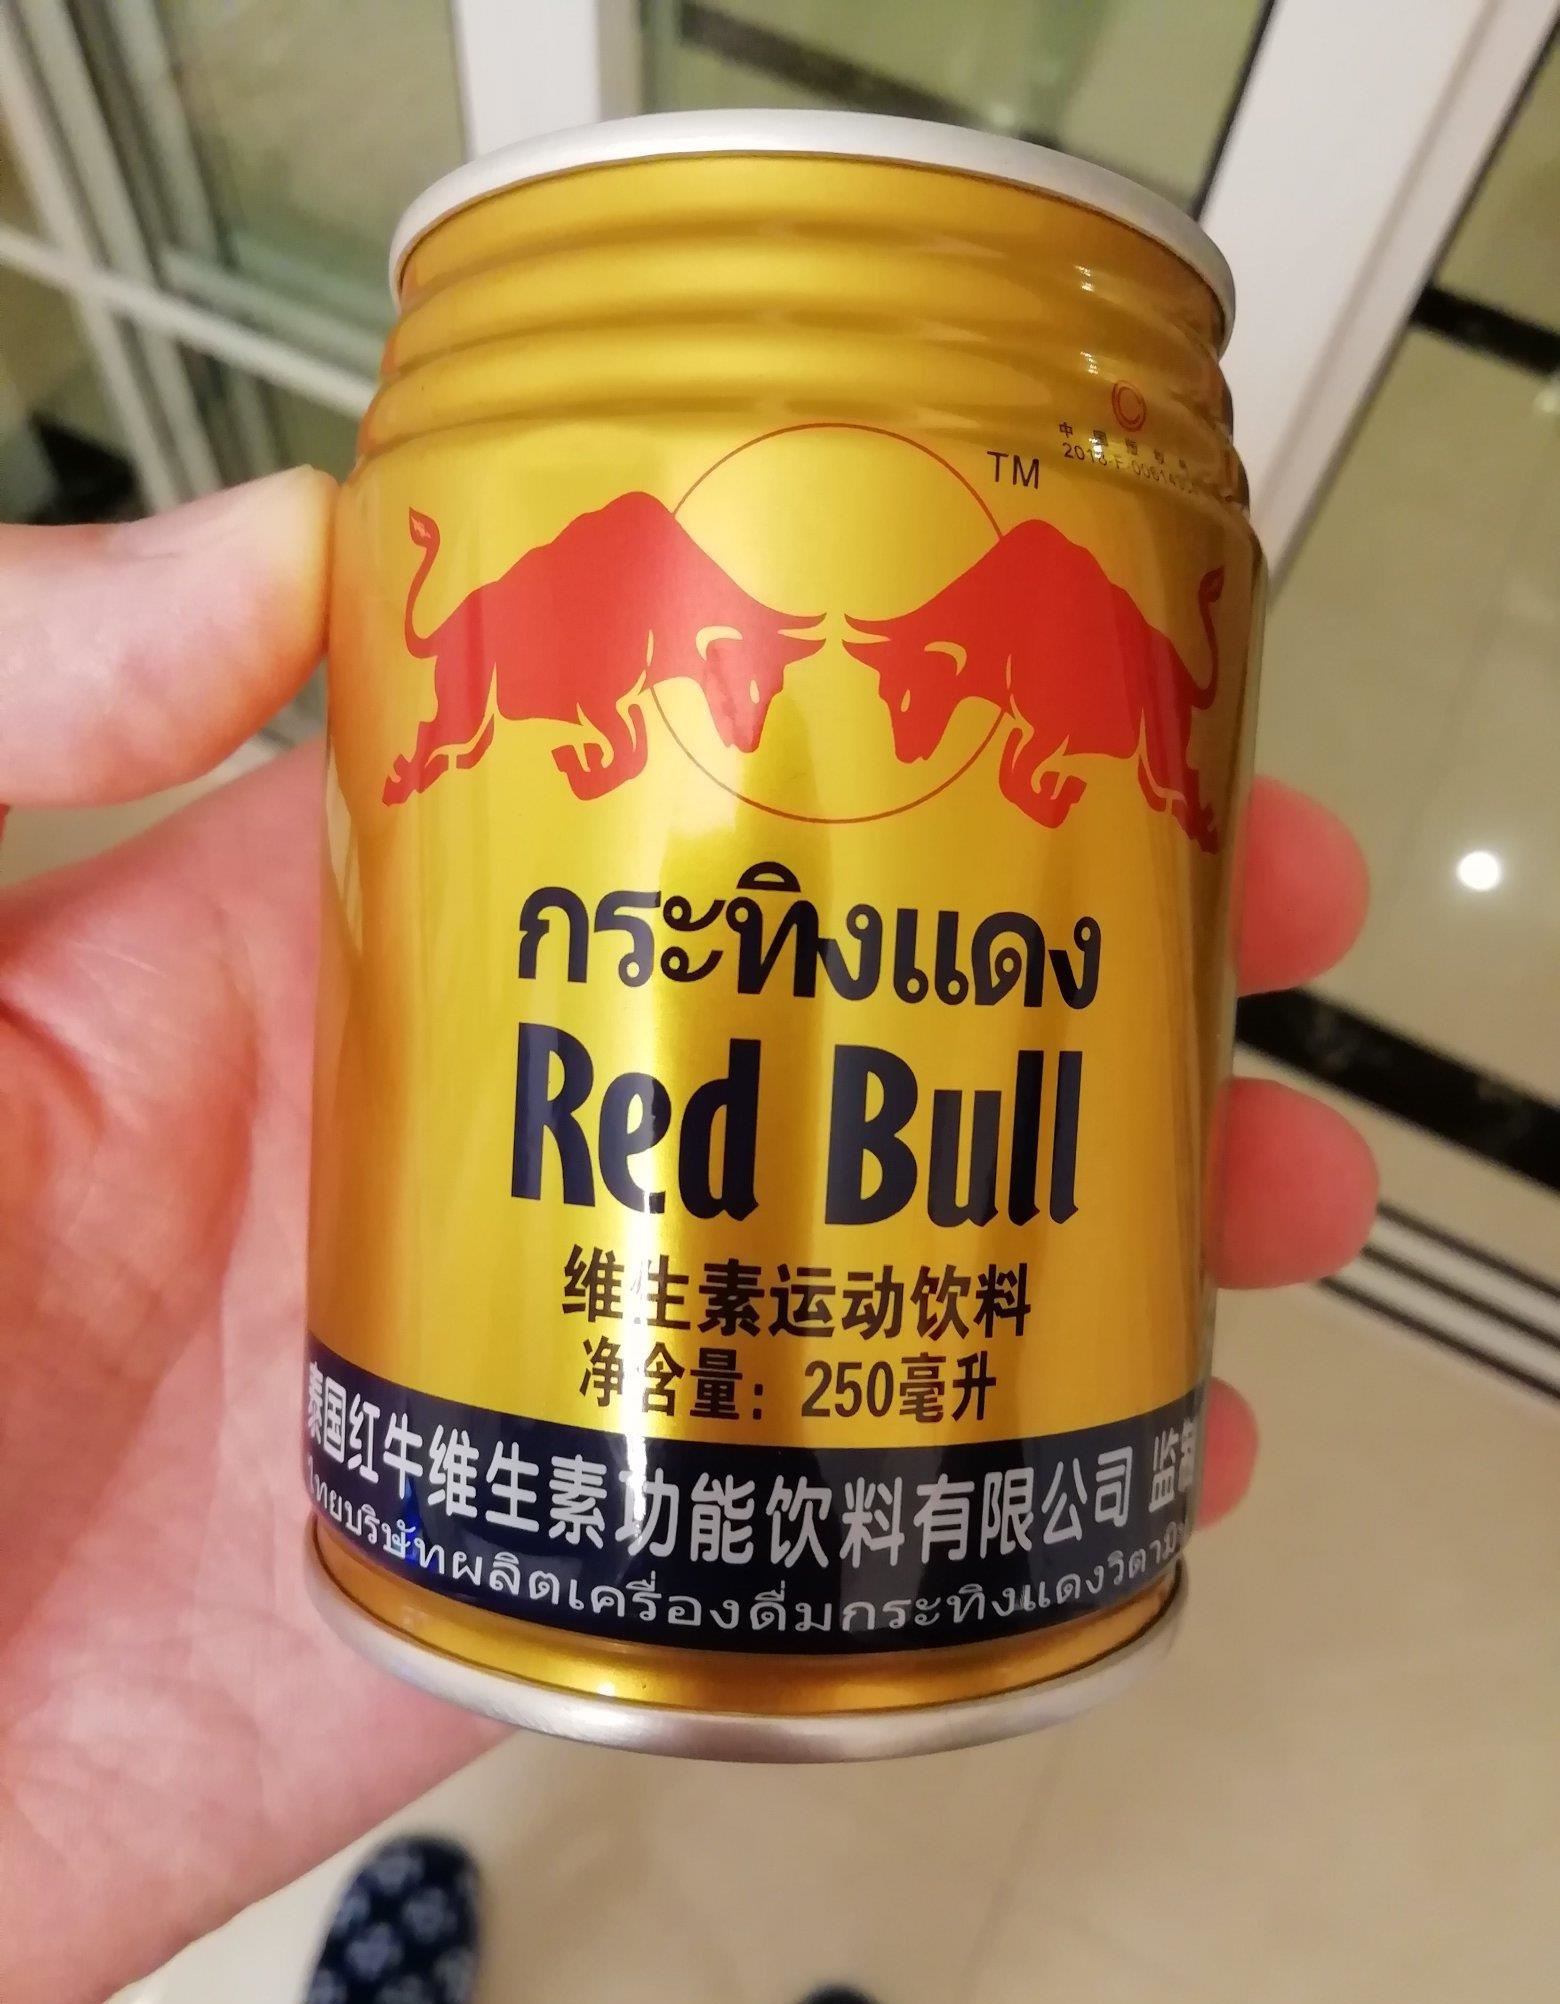 我拍了一下其它制罐厂给泰国红牛的罐体包装,完全不能和奥瑞金的制罐